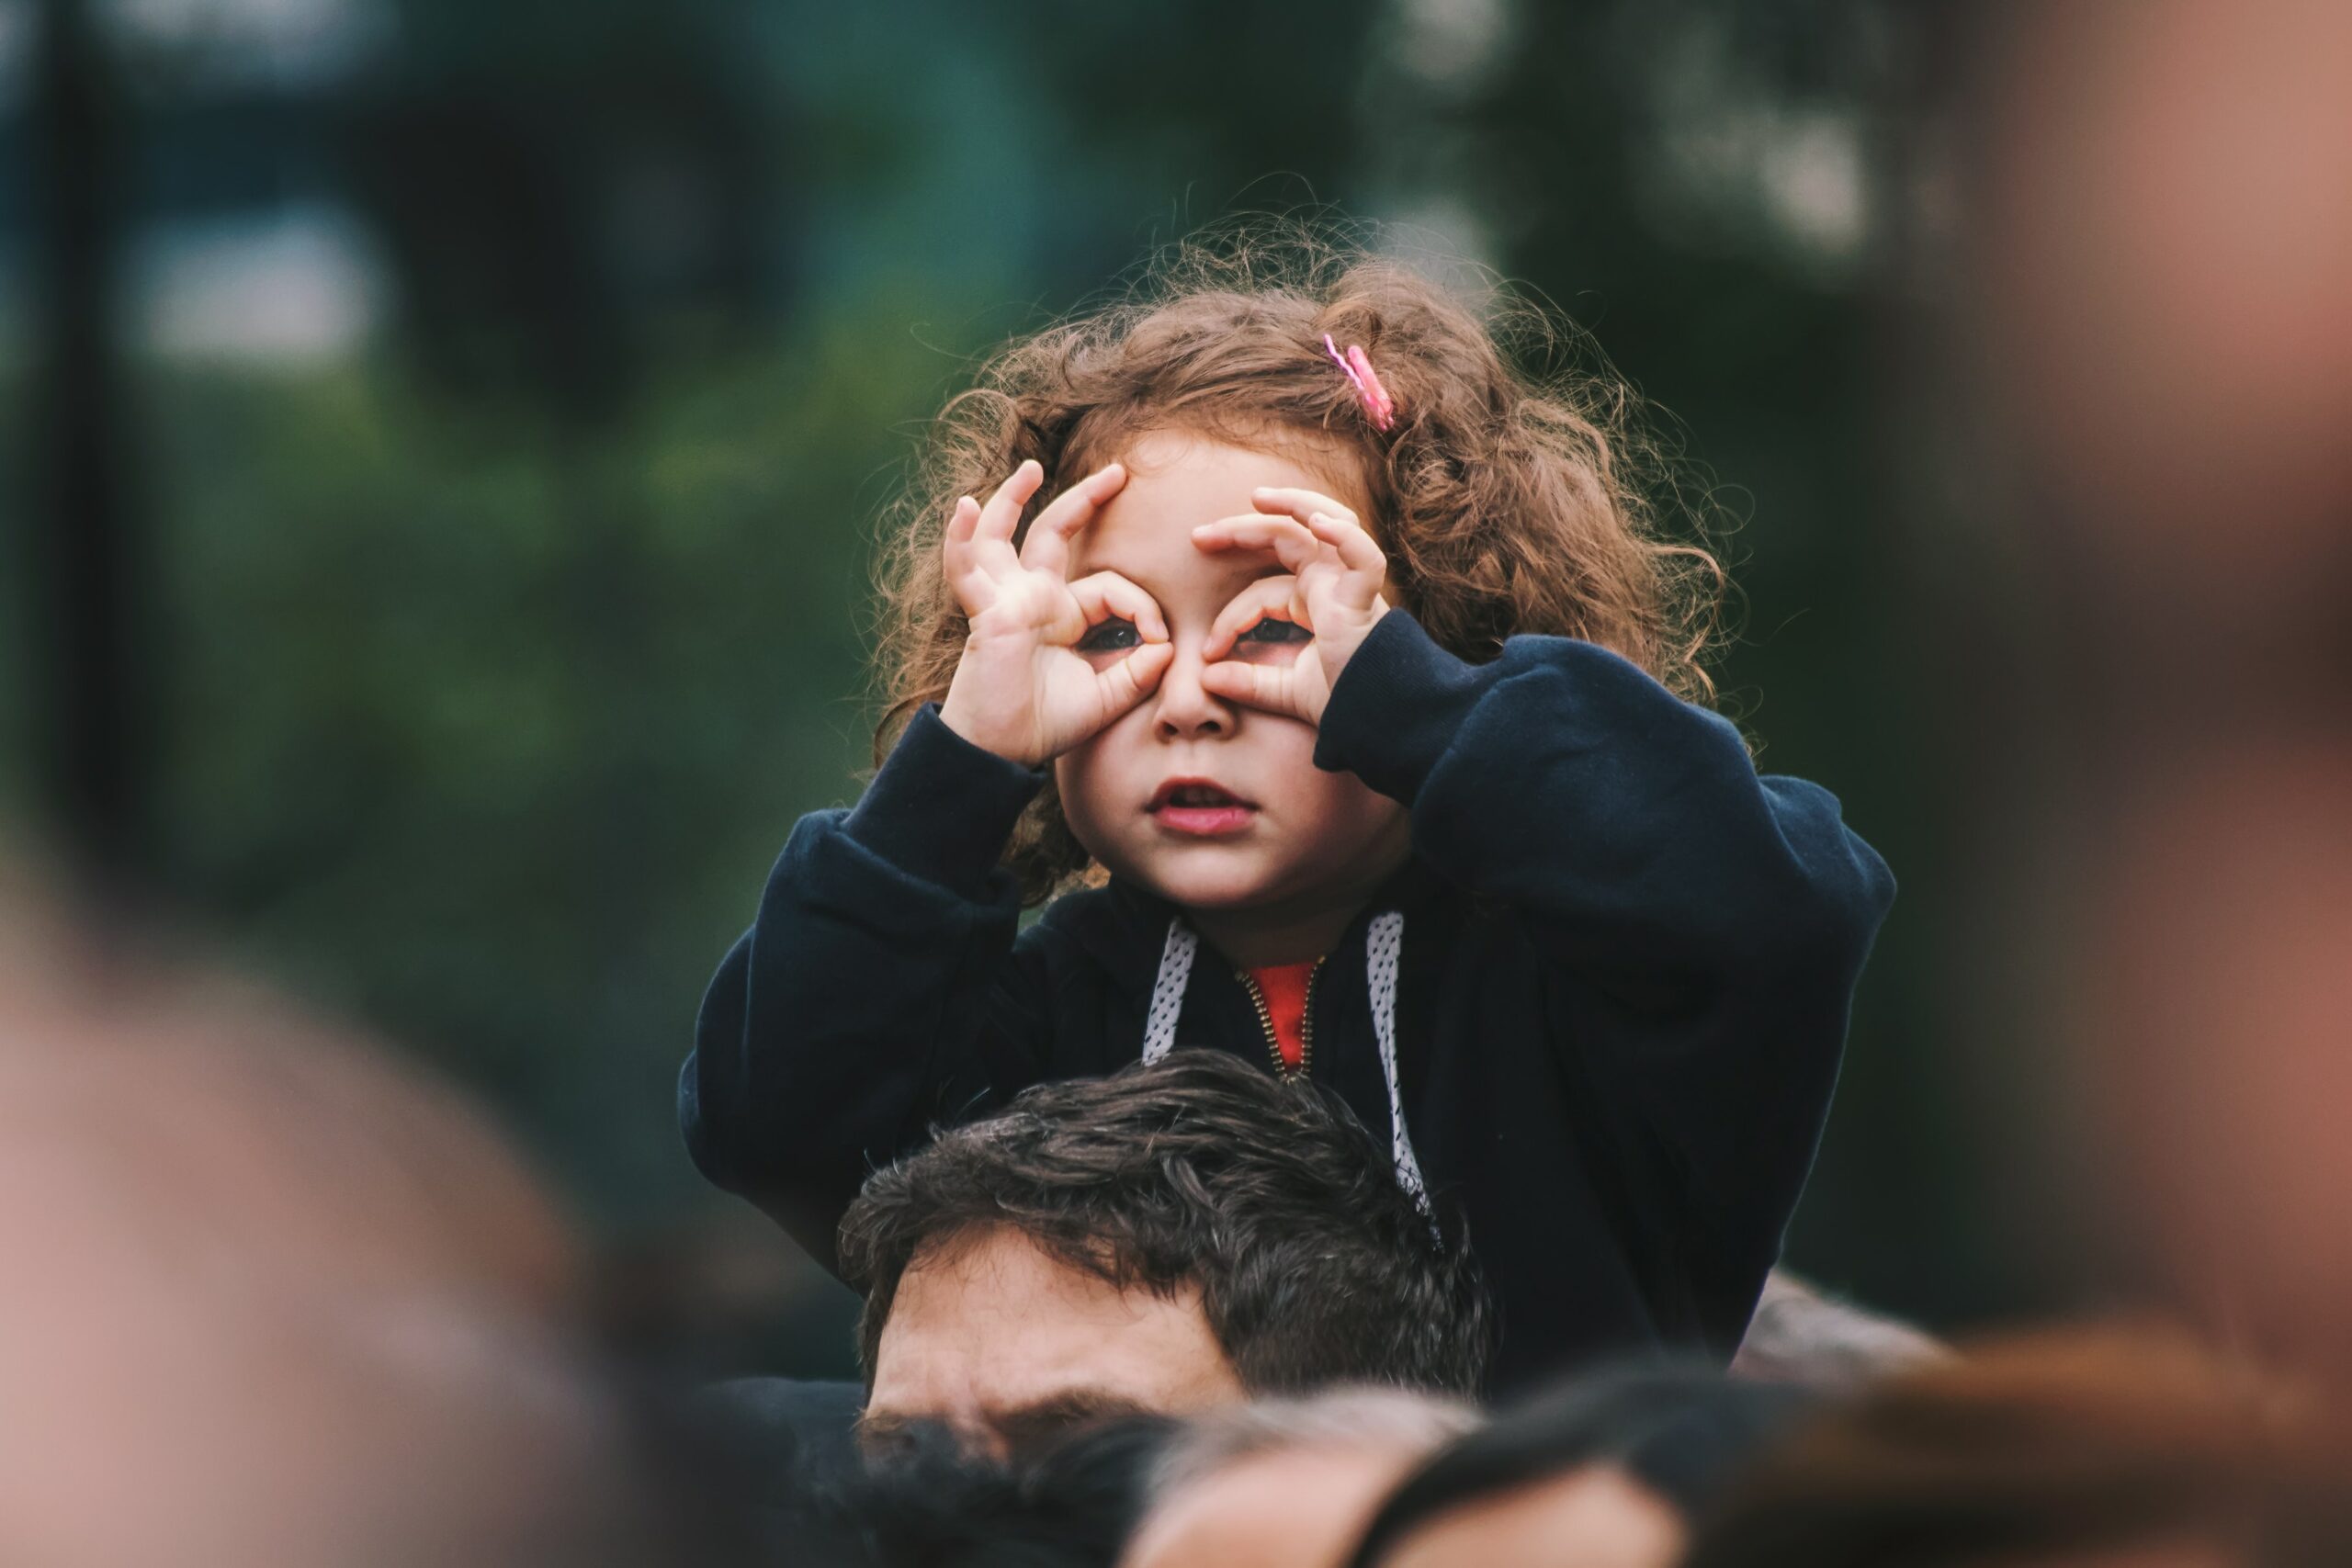 Ein Kind mit schulterlangen, braun-rötlichen Locken sitzt auf den Schultern einer Person. Mit den Händen formt sie zwei Brillengläser und scheint in die Ferne zu blicken.